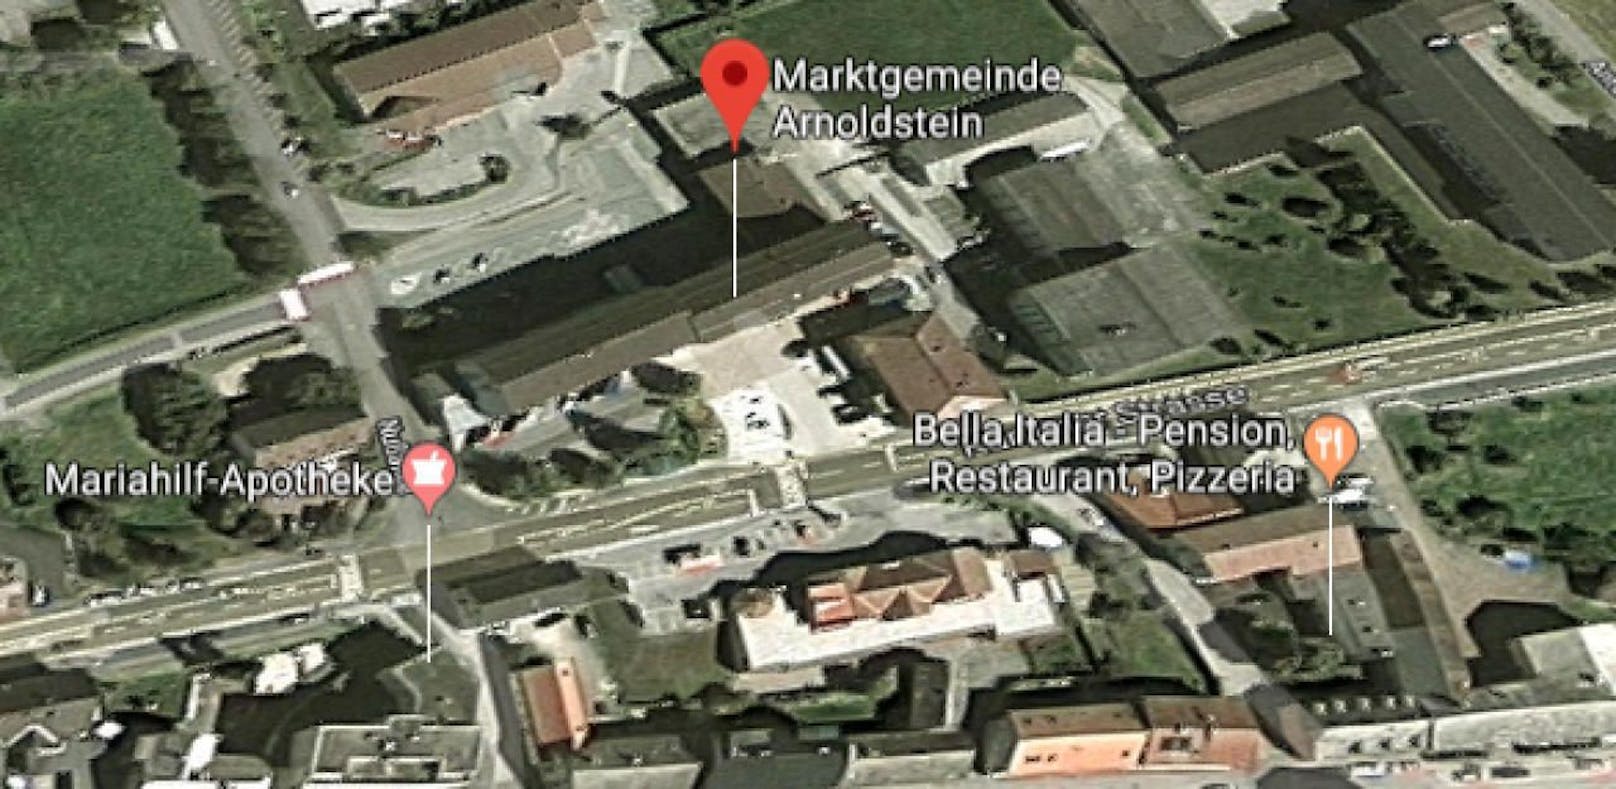 In der Marktgemeinde Arnoldstein kam es zu einer Bombendrohung.